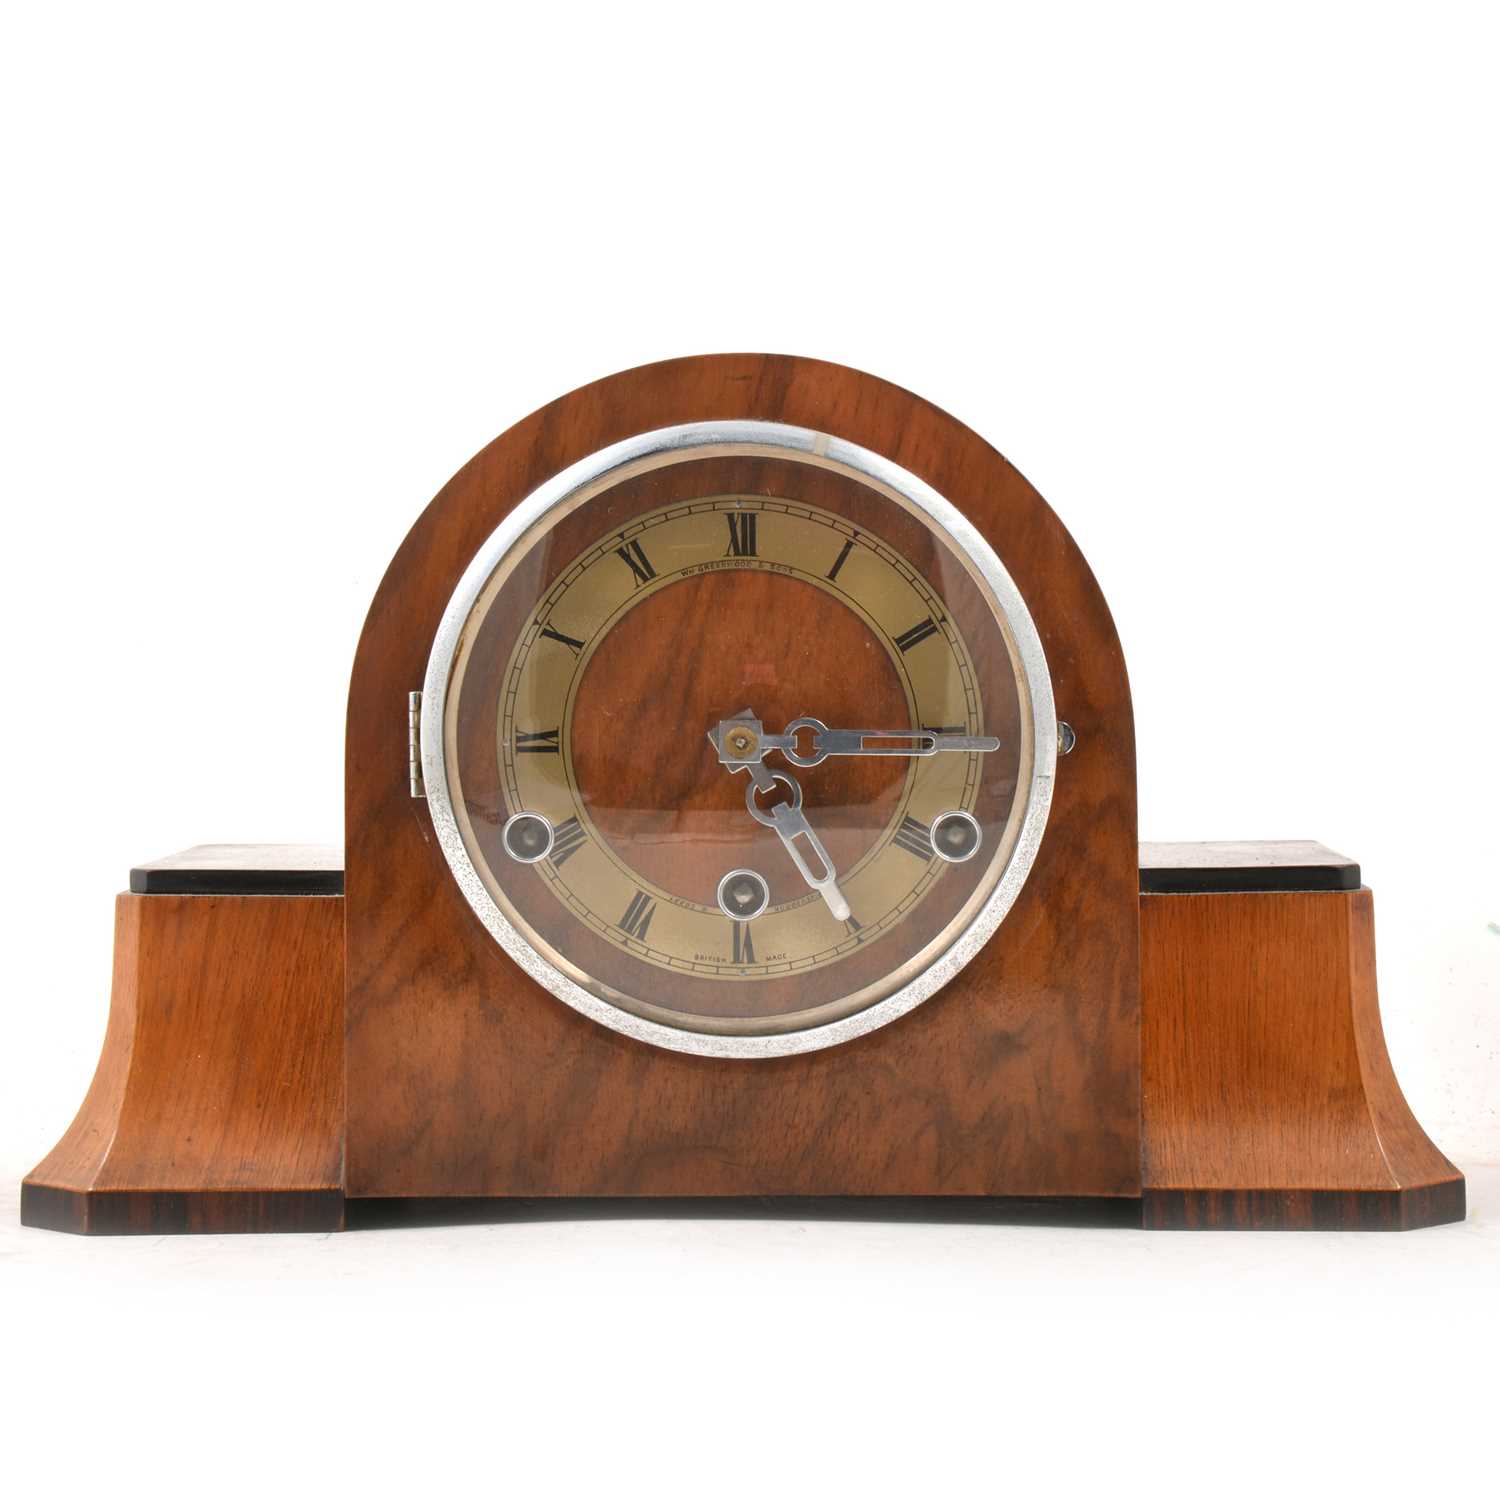 Lot 116 - Art Deco style mantel clock, Perivale movement.